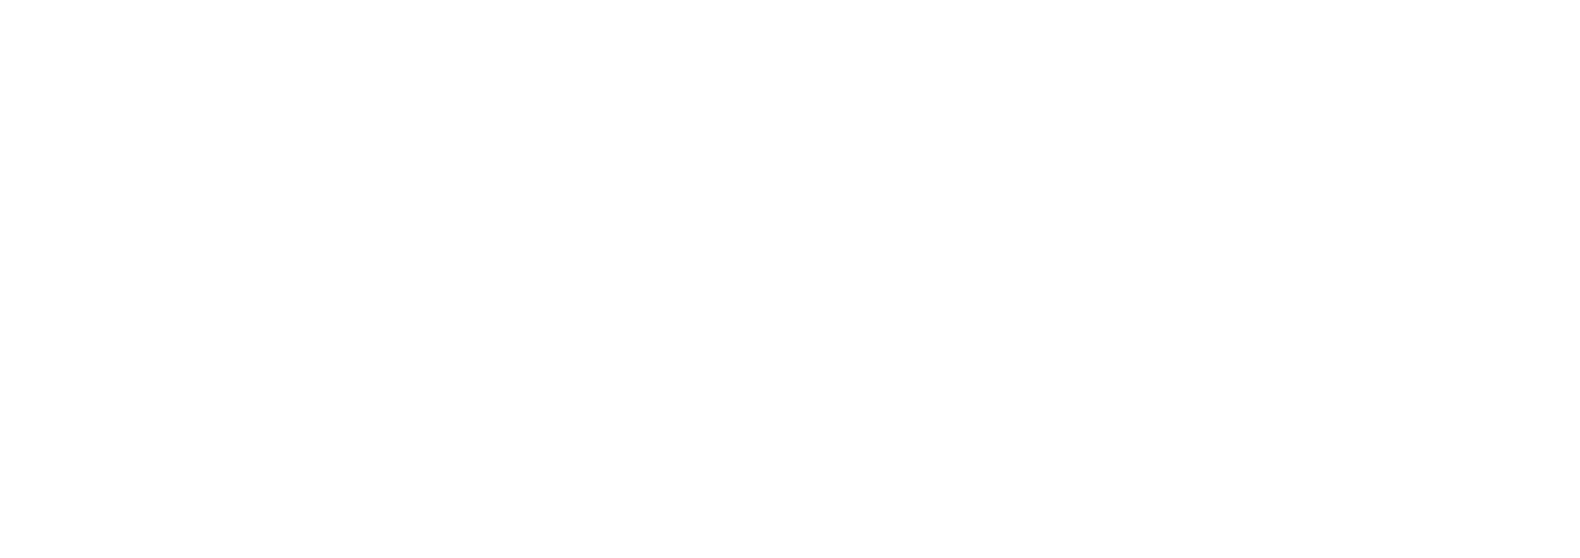 Fenix Outdoor logo large for dark backgrounds (transparent PNG)